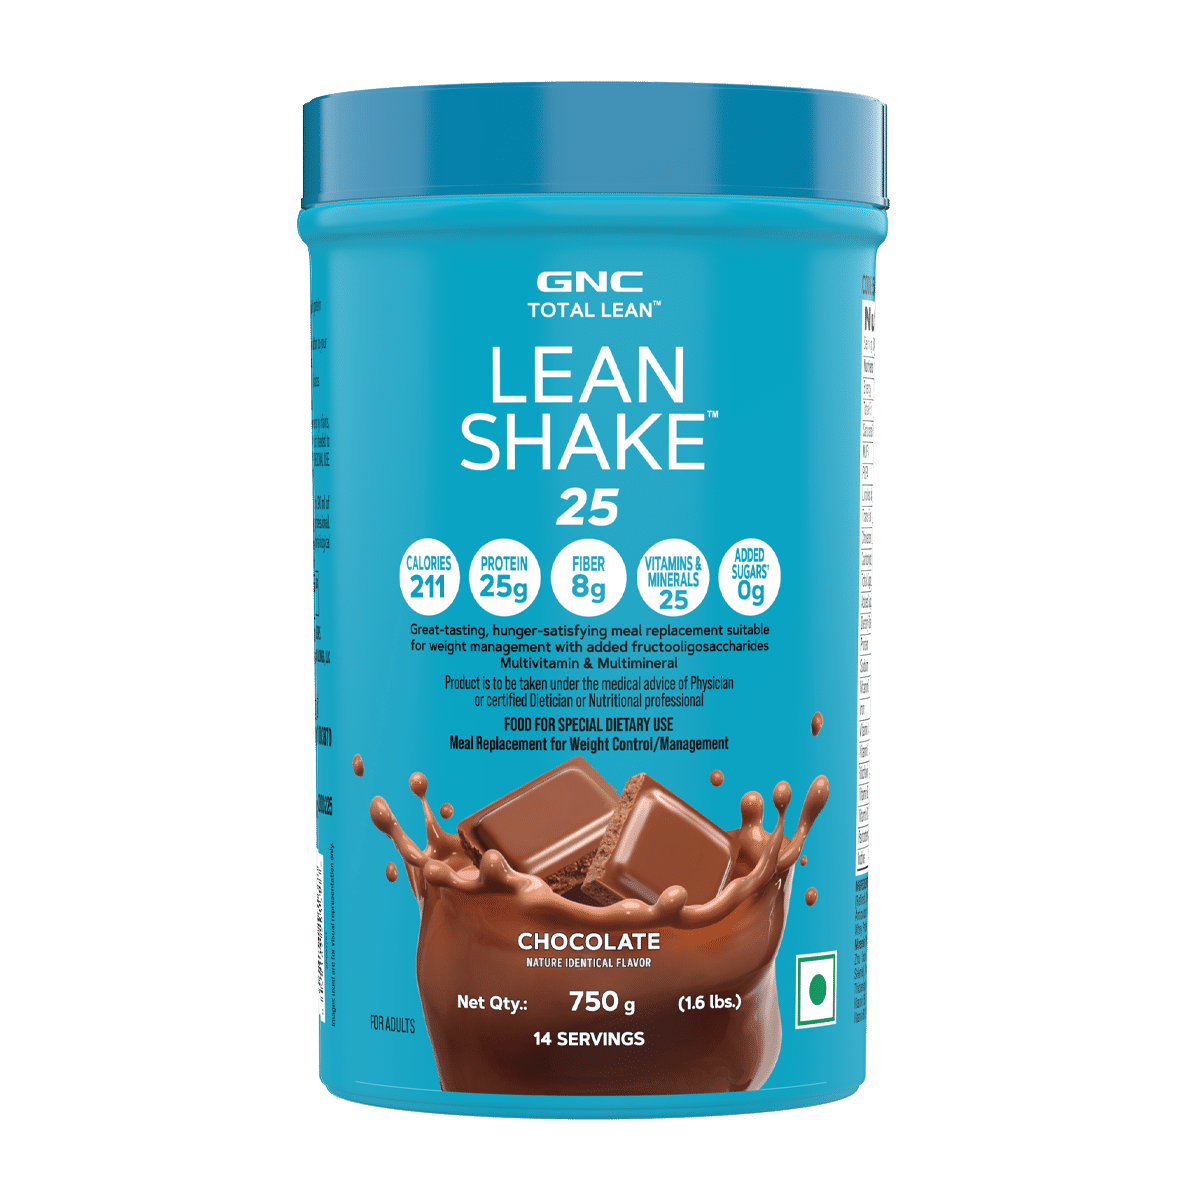 GNC Total Lean Lean Shake 25 - 211 Calories- 25g Protein- 8g Fiber - 1.6 lbs - Chocolate